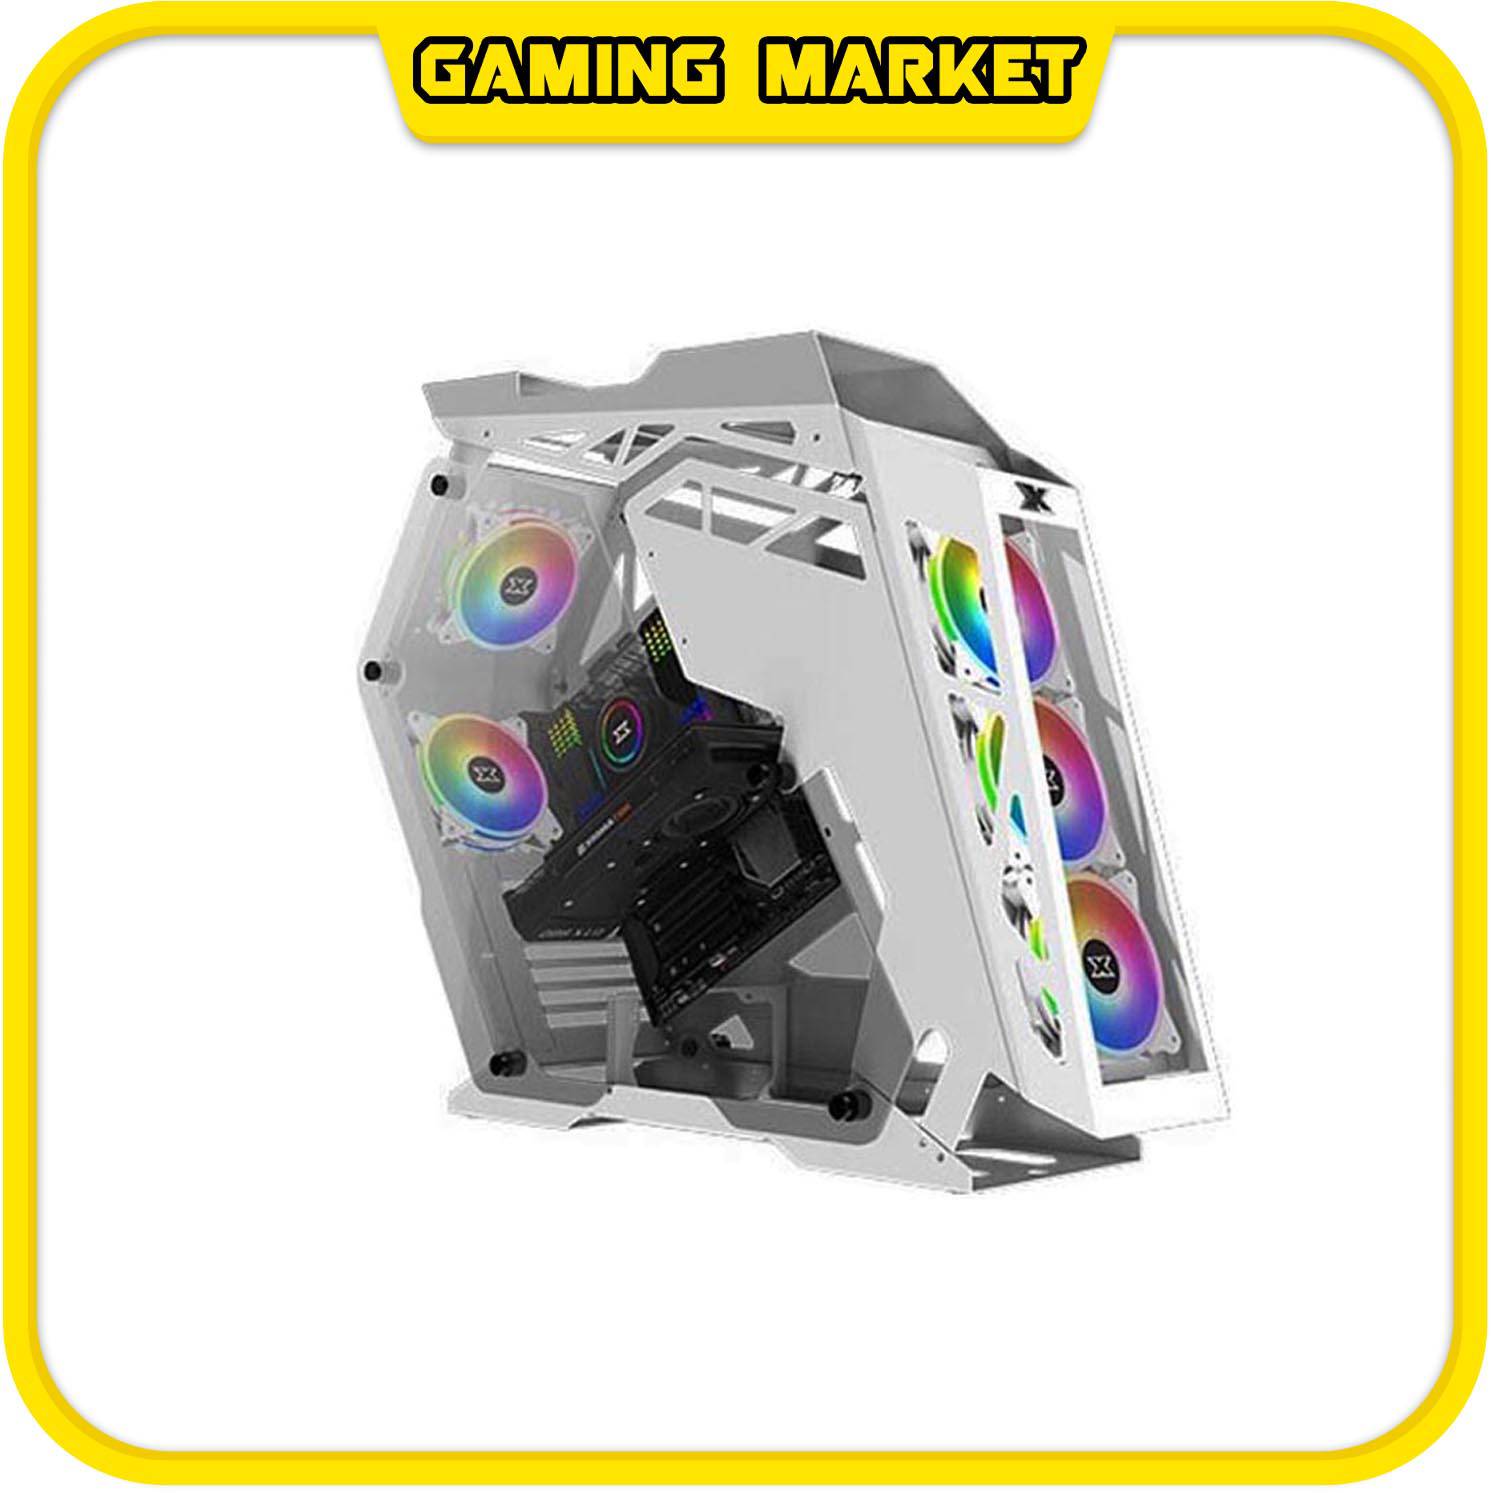 PC CHƠI GAME, ĐỒ HOẠ I3 10100F/RAM 8G/VGA 1650 4G SUPER